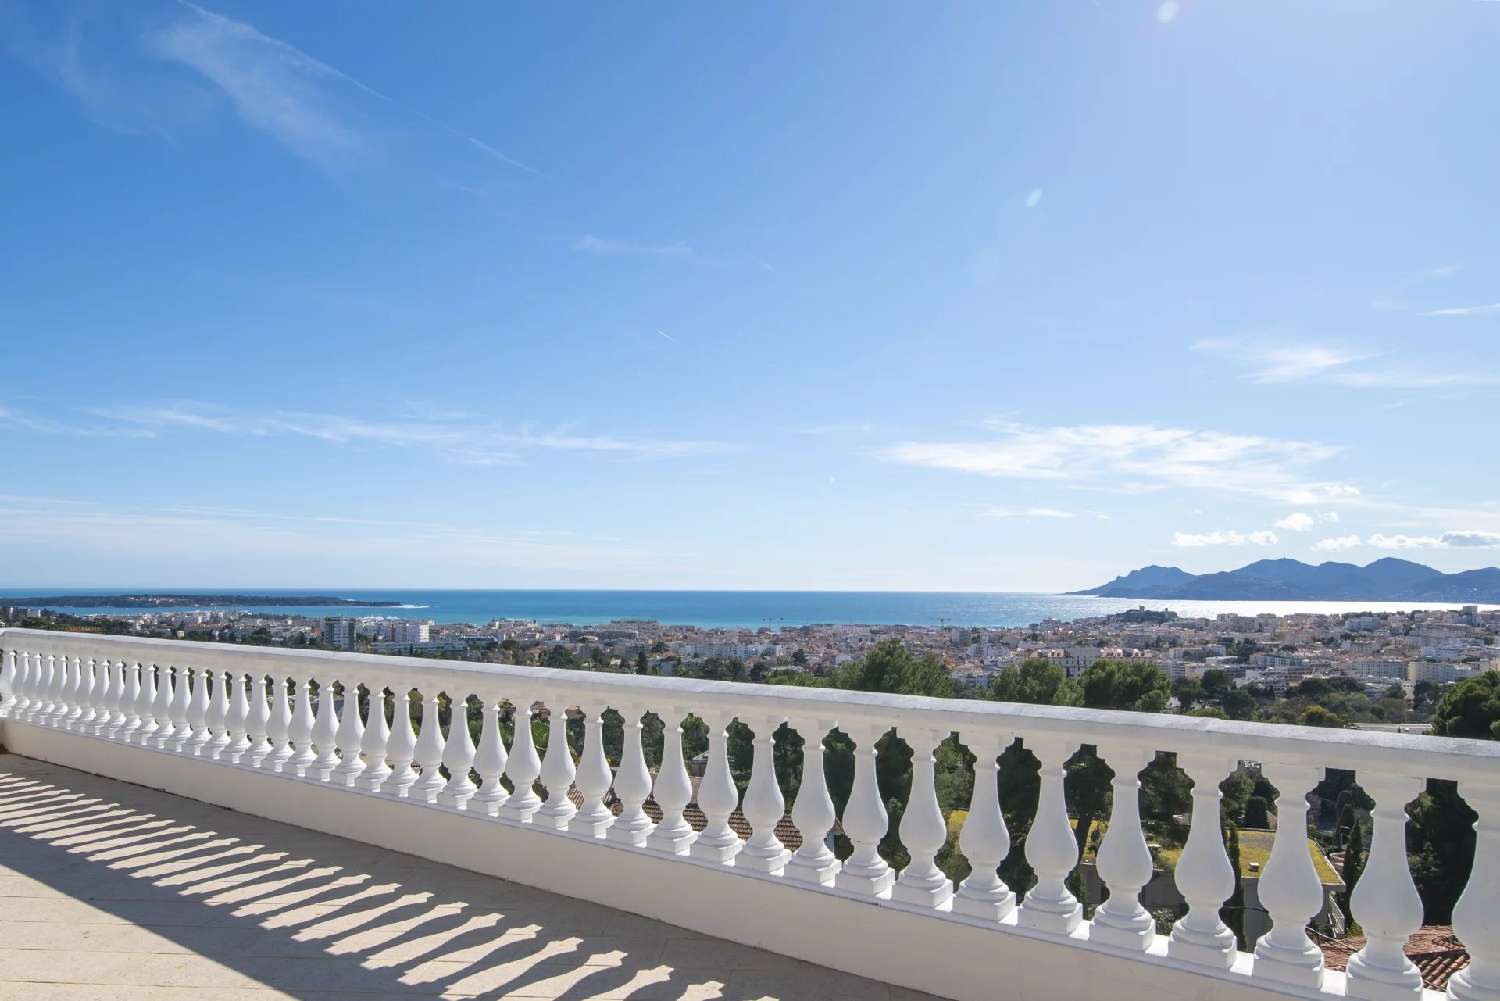  for sale villa Cannes Alpes-Maritimes 4